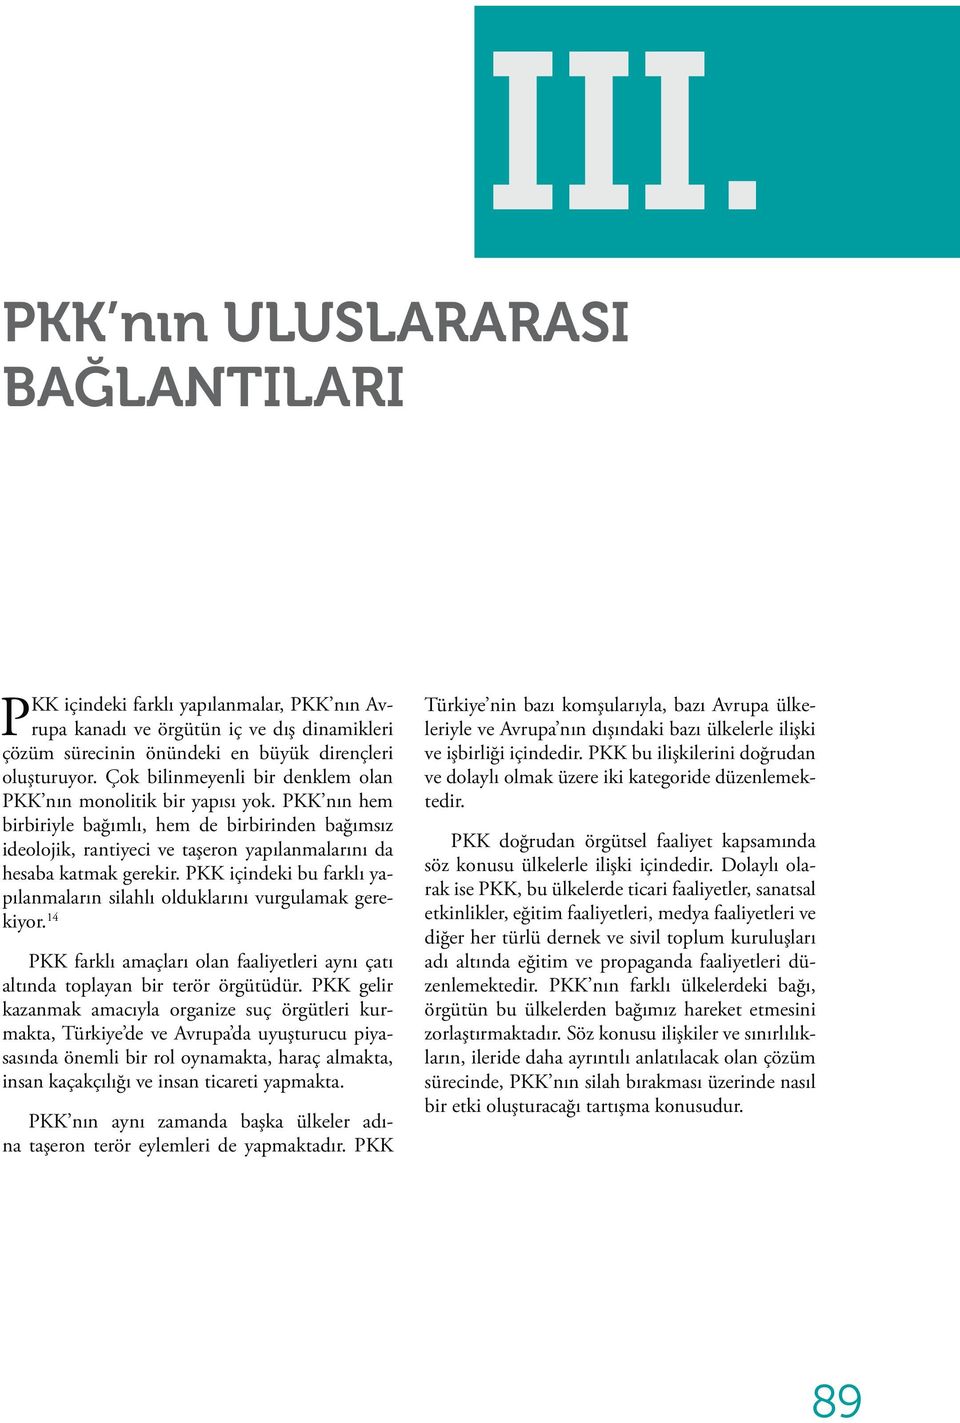 PKK nın hem birbiriyle bağımlı, hem de birbirinden bağımsız ideolojik, rantiyeci ve taşeron yapılanmalarını da hesaba katmak gerekir.